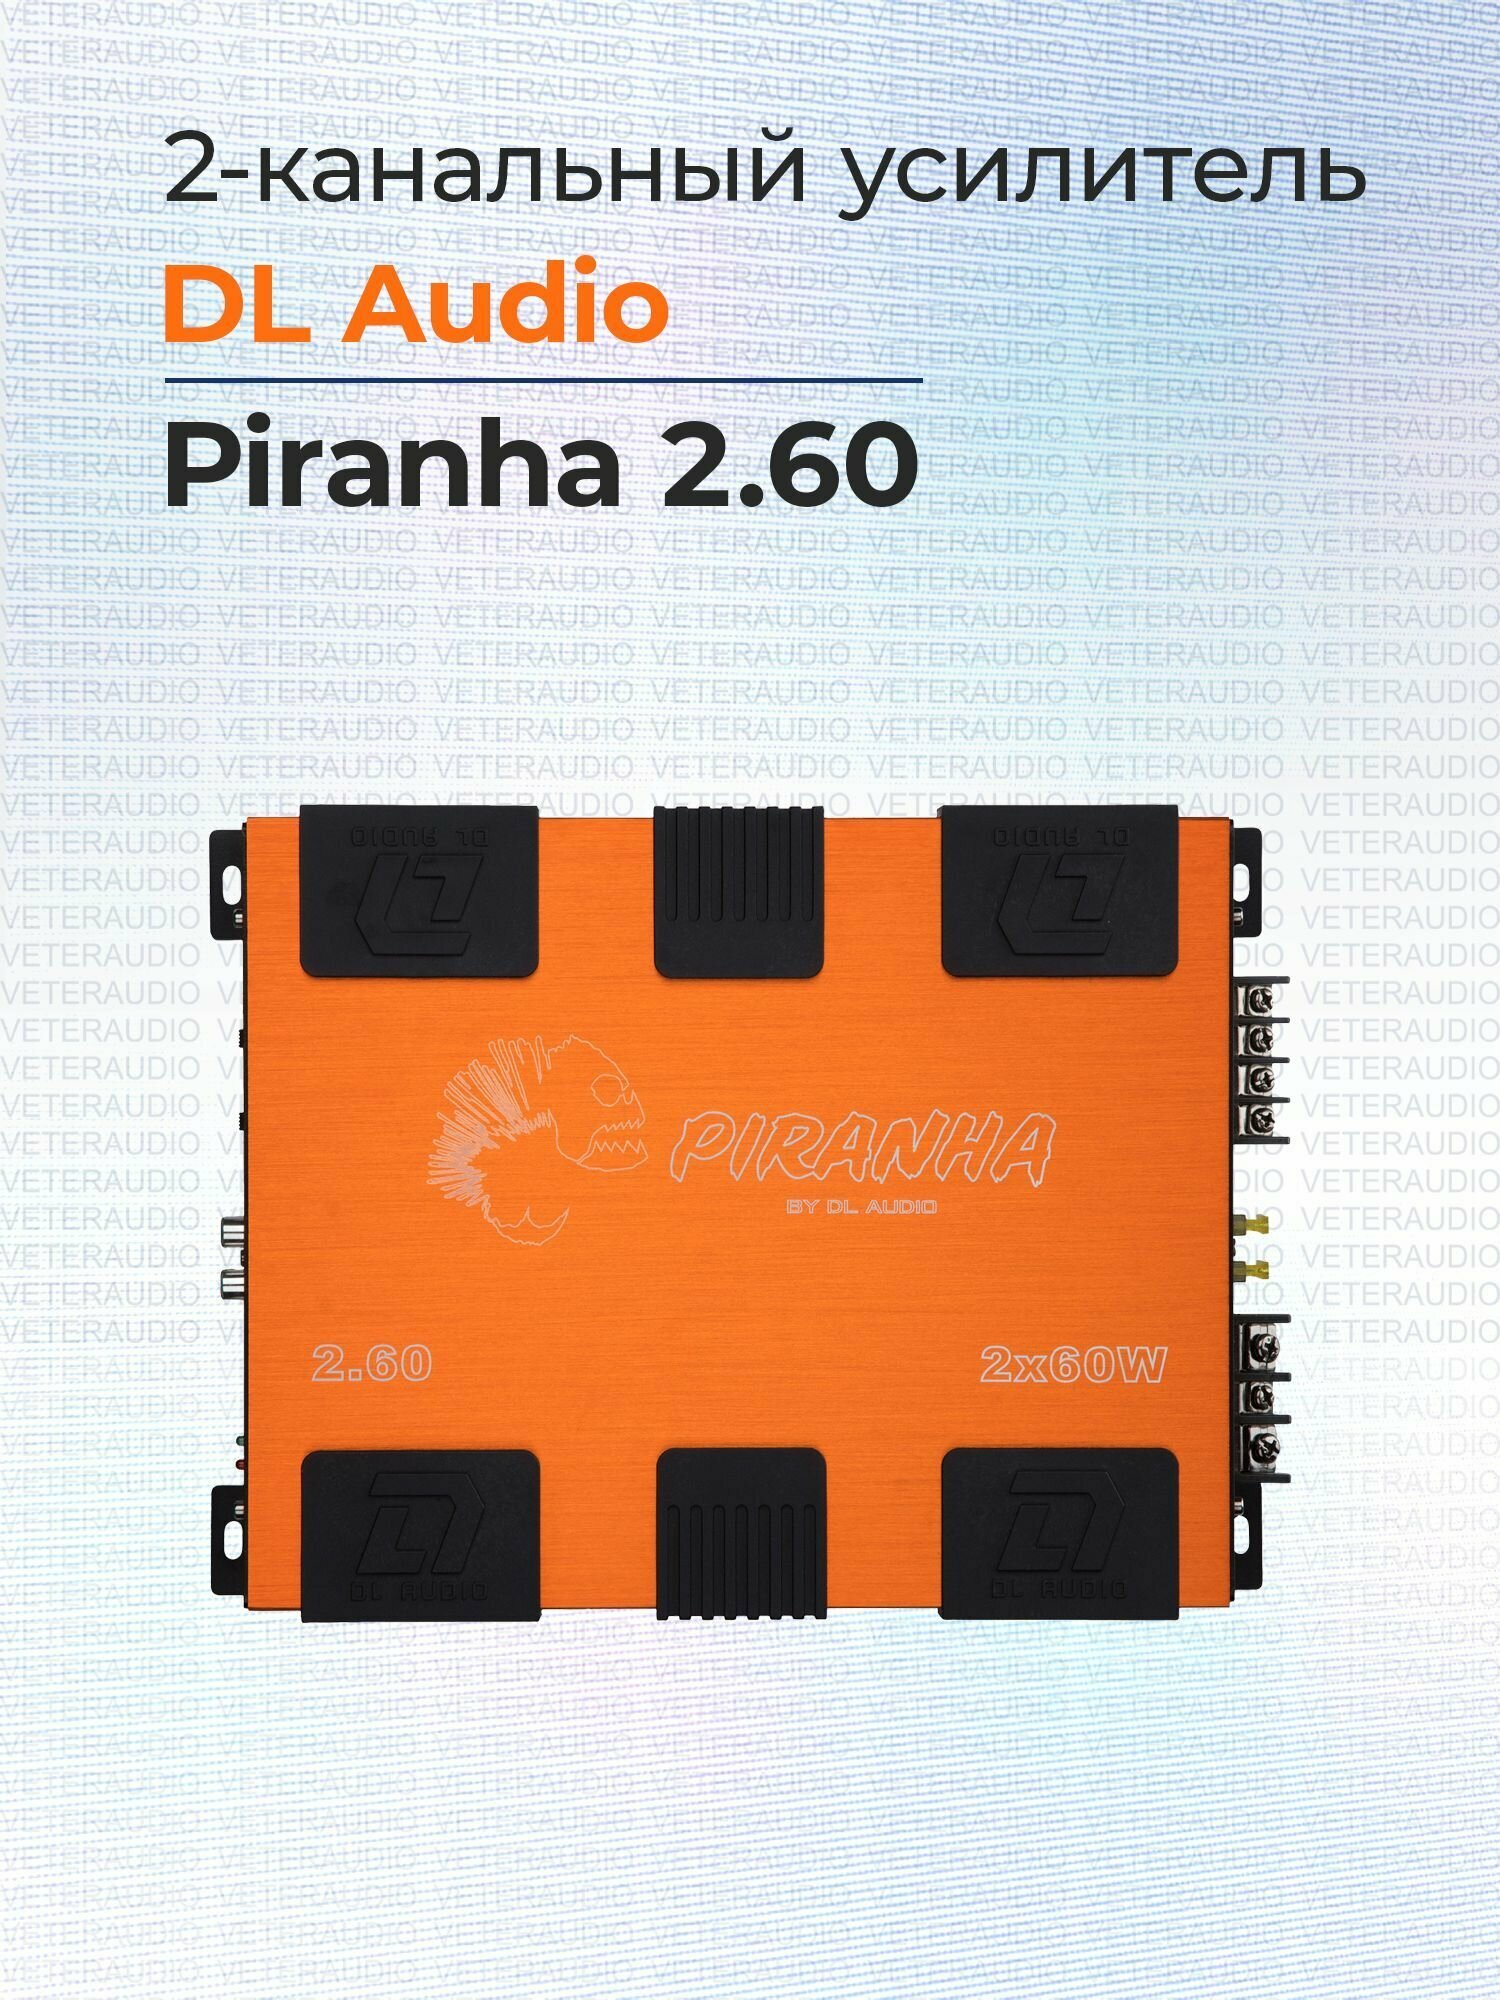 Усилитель 2-канальный DL Audio Piranha 2.60